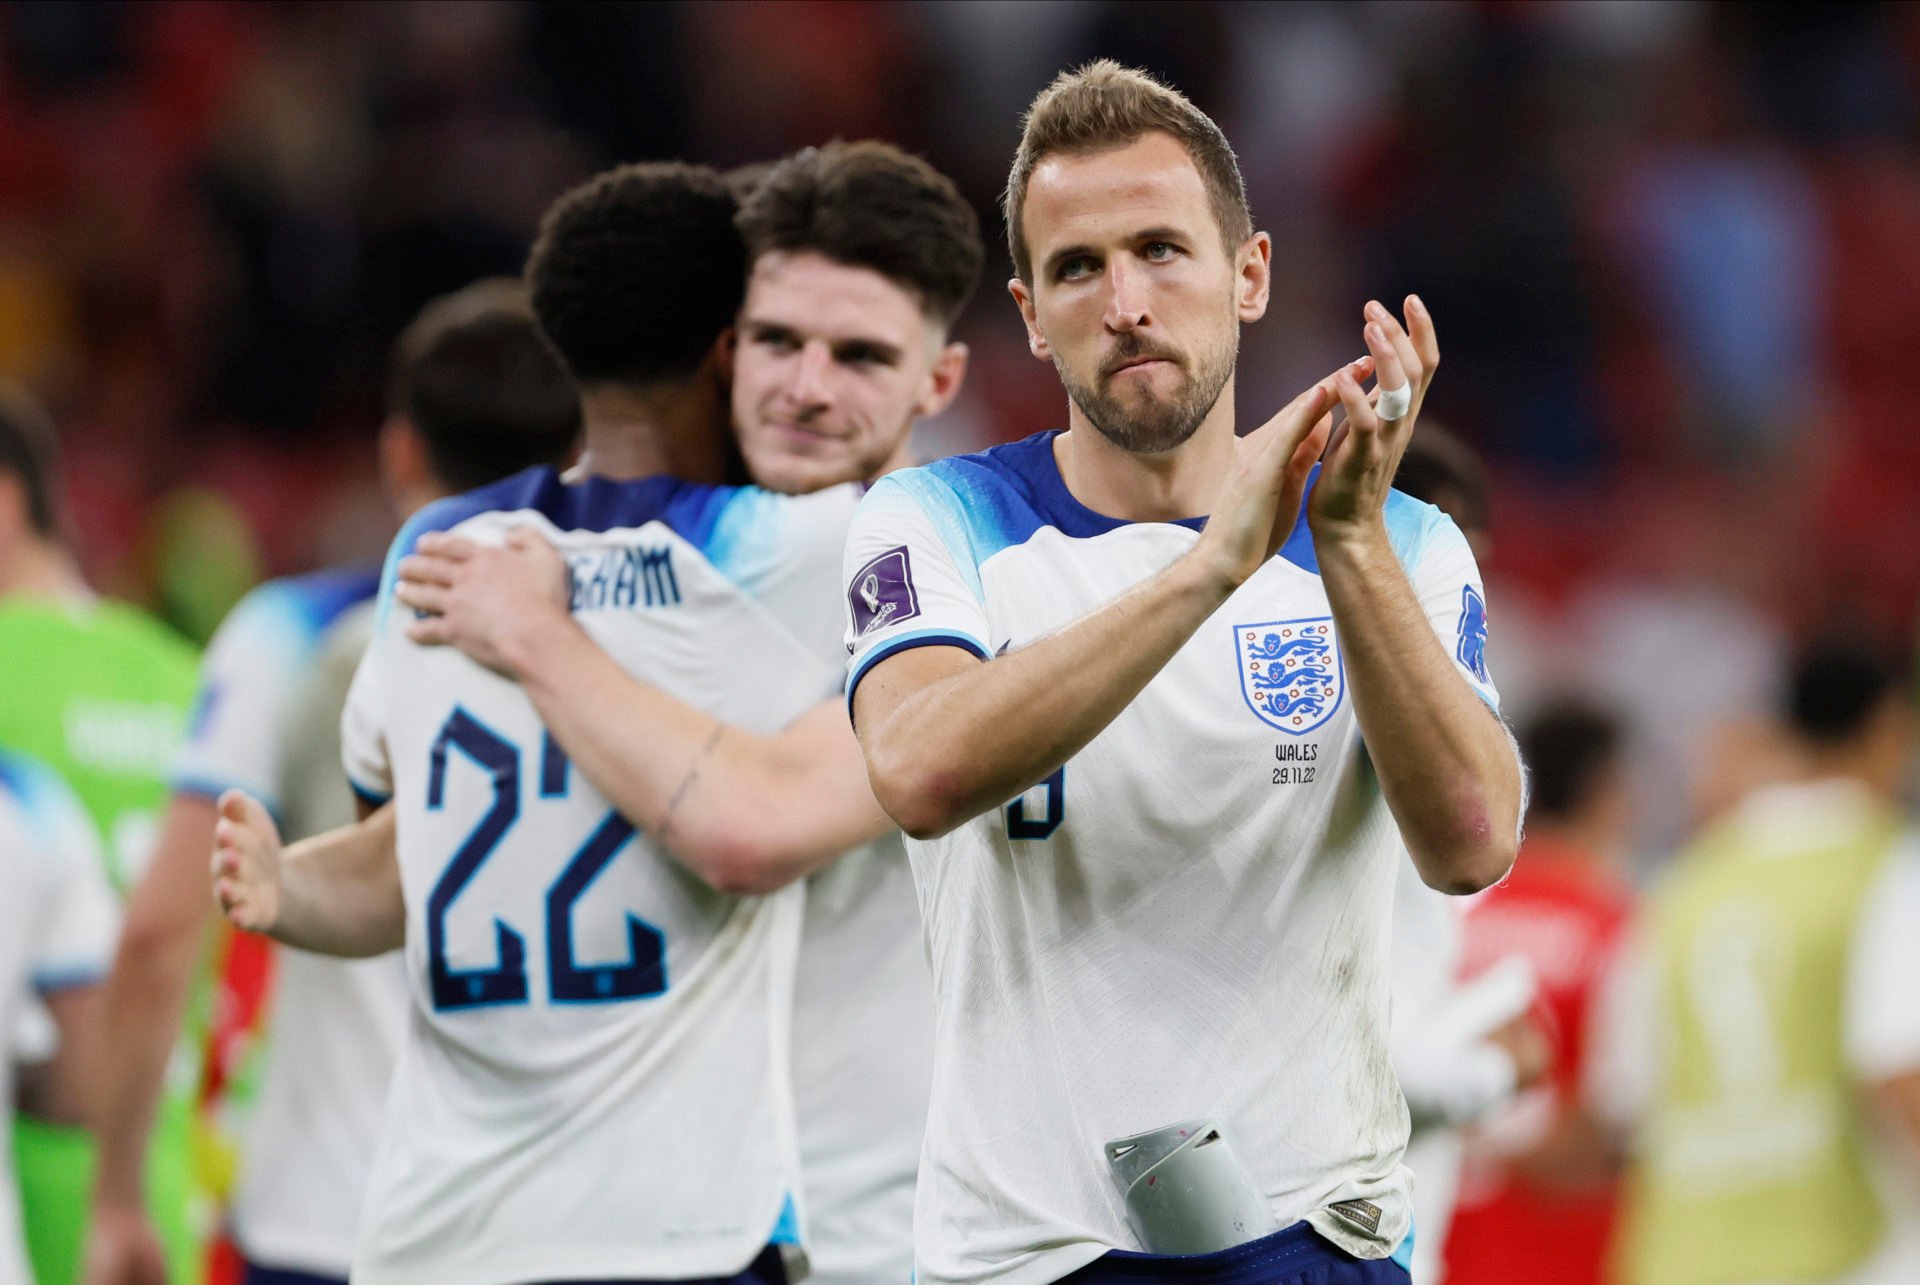 Kane starting England